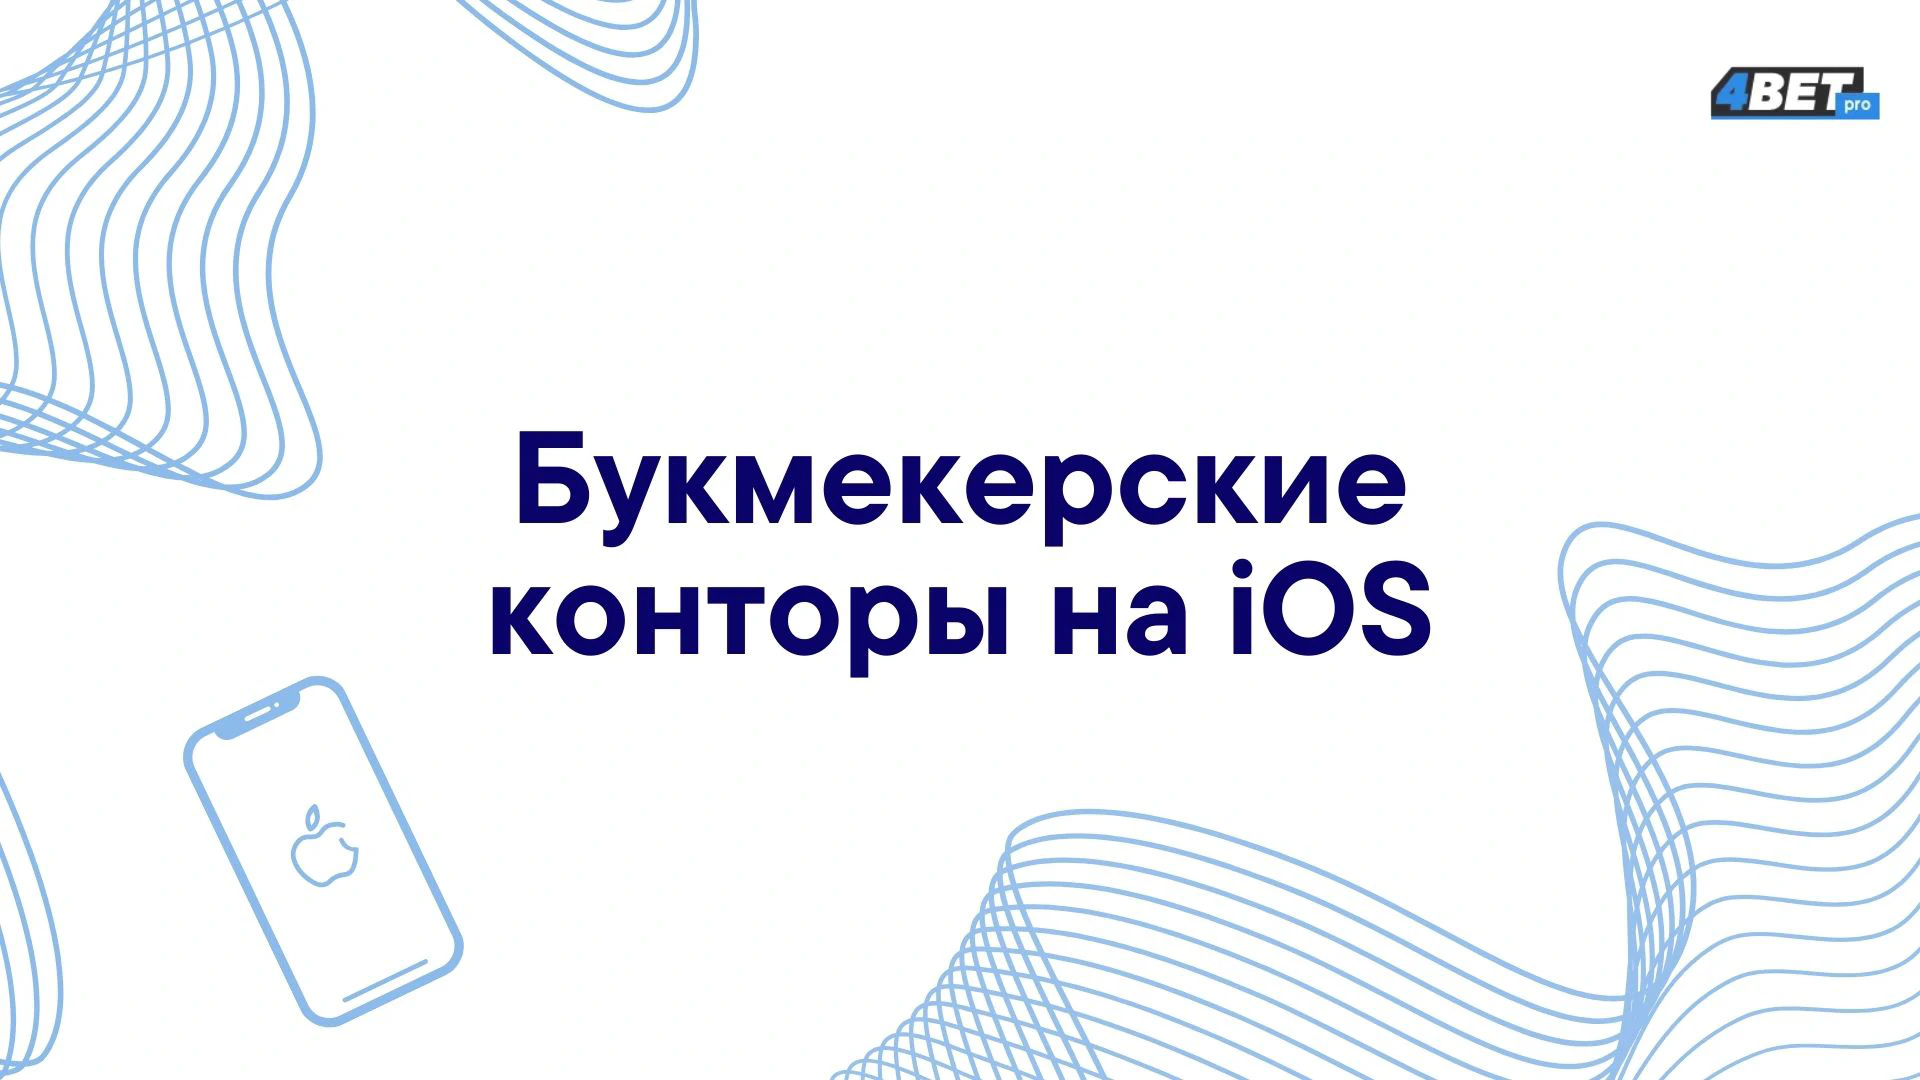 Букмекерская контора приложение для iOS